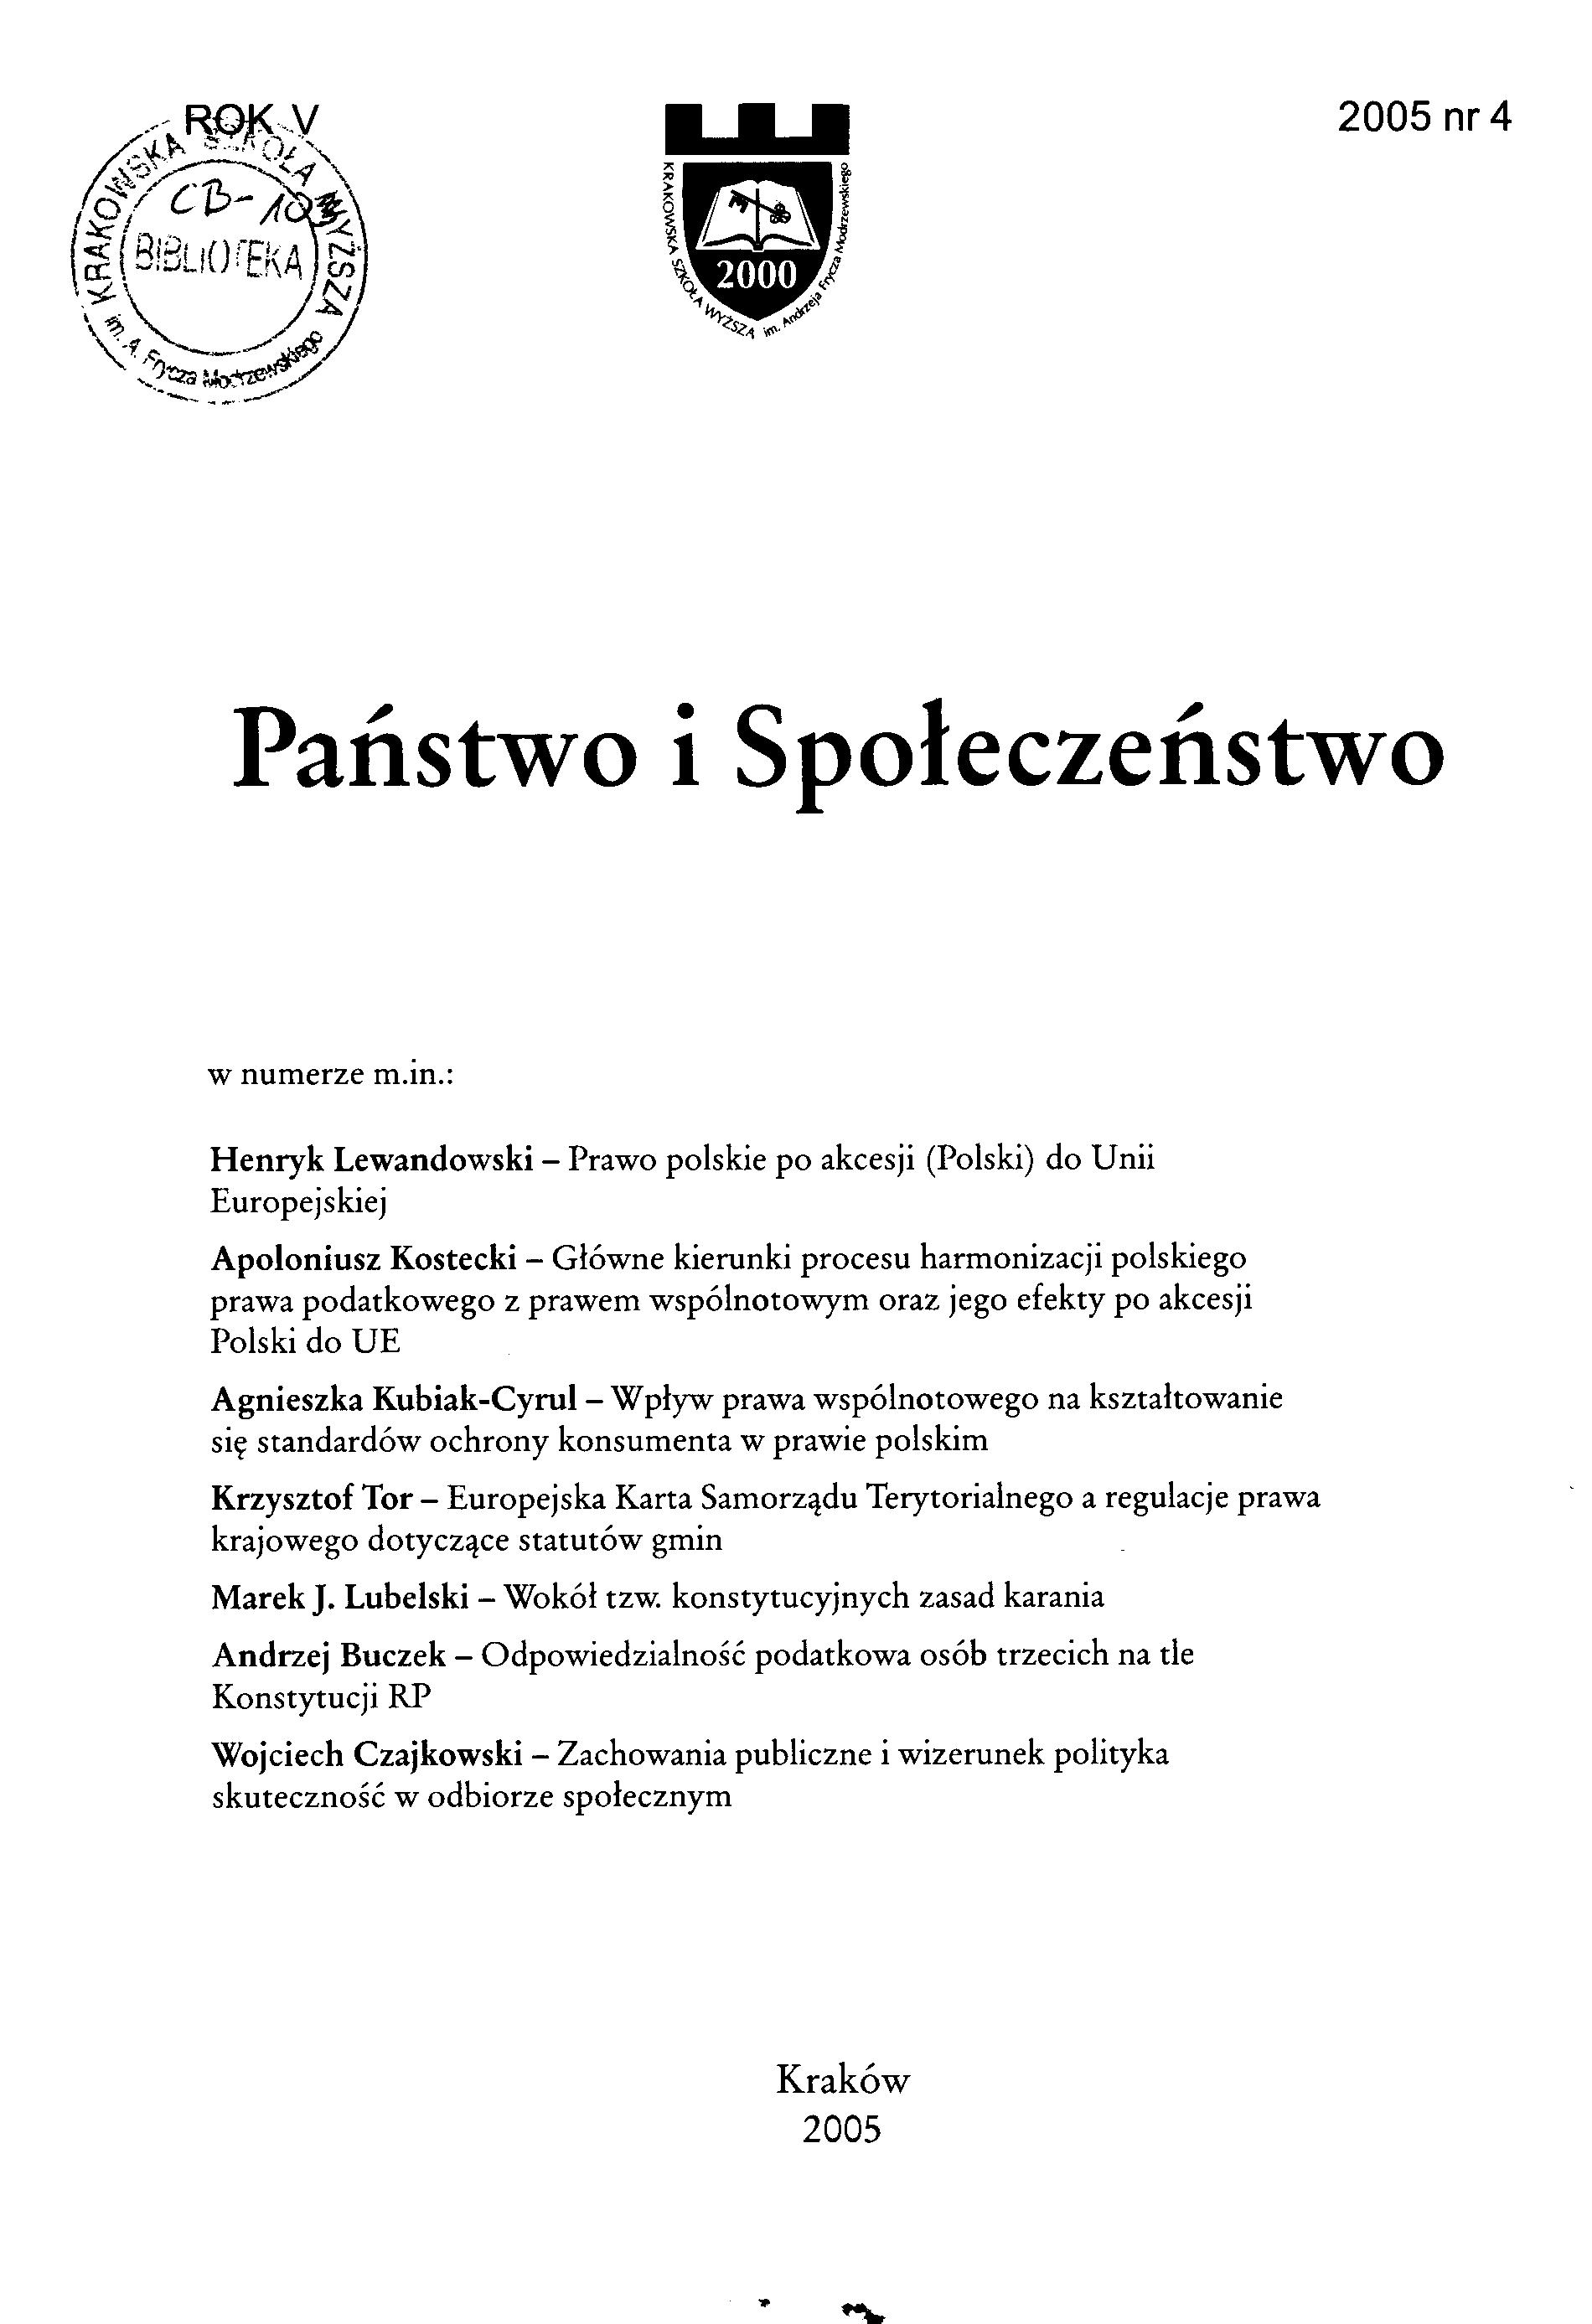 Artur Mezgłewski, Henryk Misztal, Piotr Stanisz, Prawo wyznaniowe, [Wydawnictwo C.H. Beck, Warszawa 2006, pp. 284] Cover Image